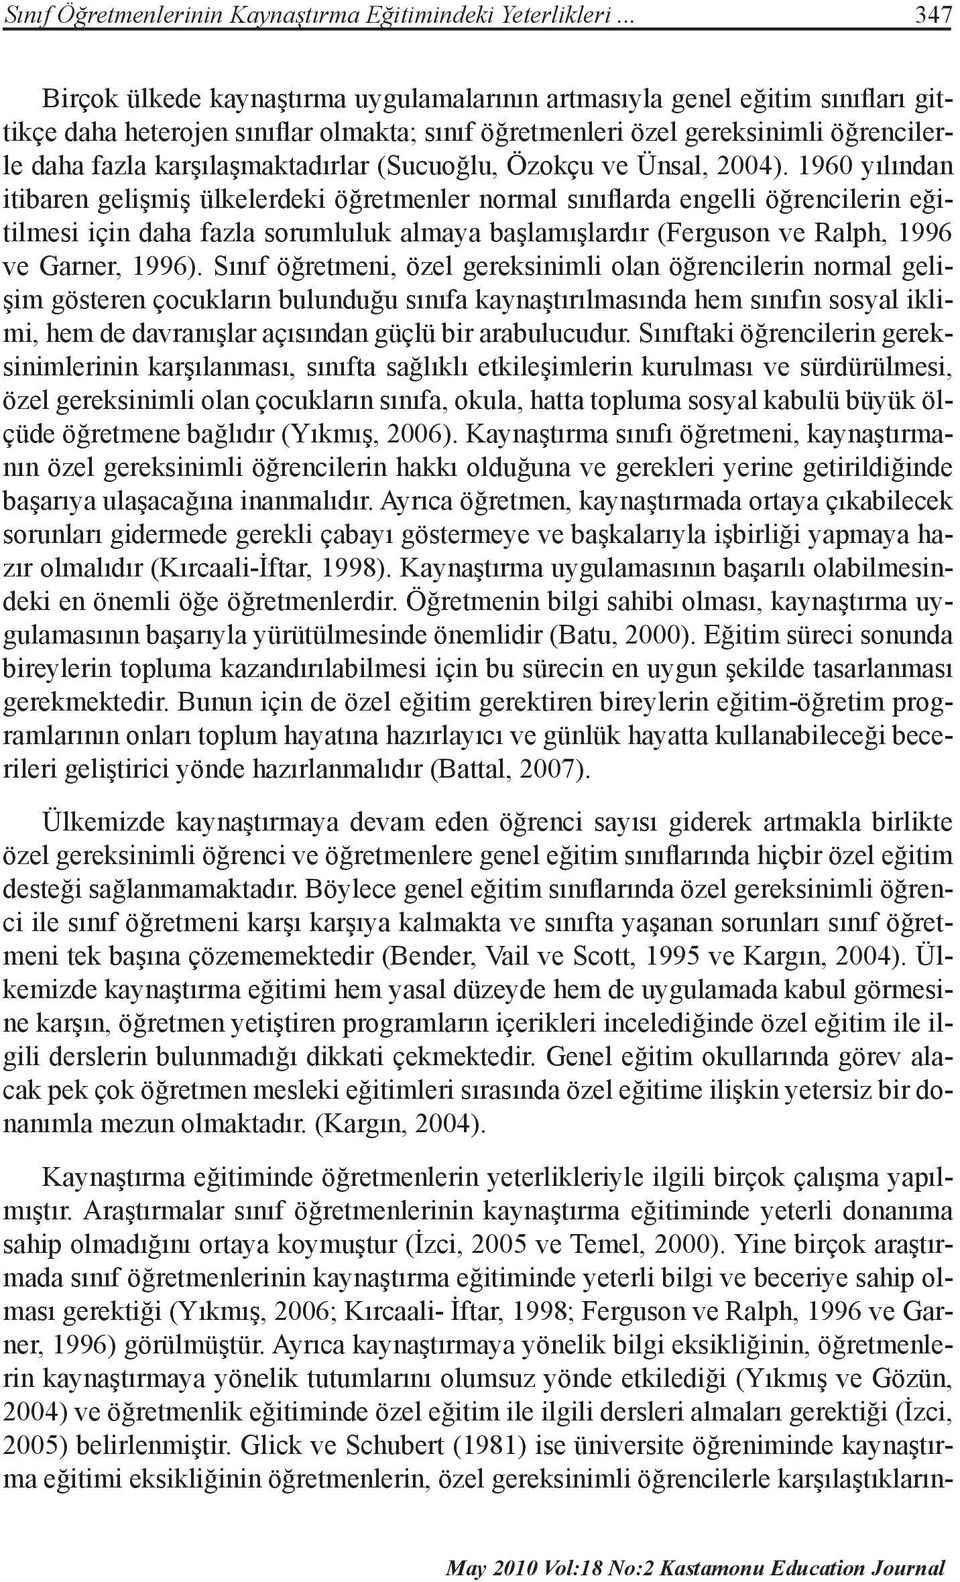 karşılaşmaktadırlar (Sucuoğlu, Özokçu ve Ünsal, 2004).